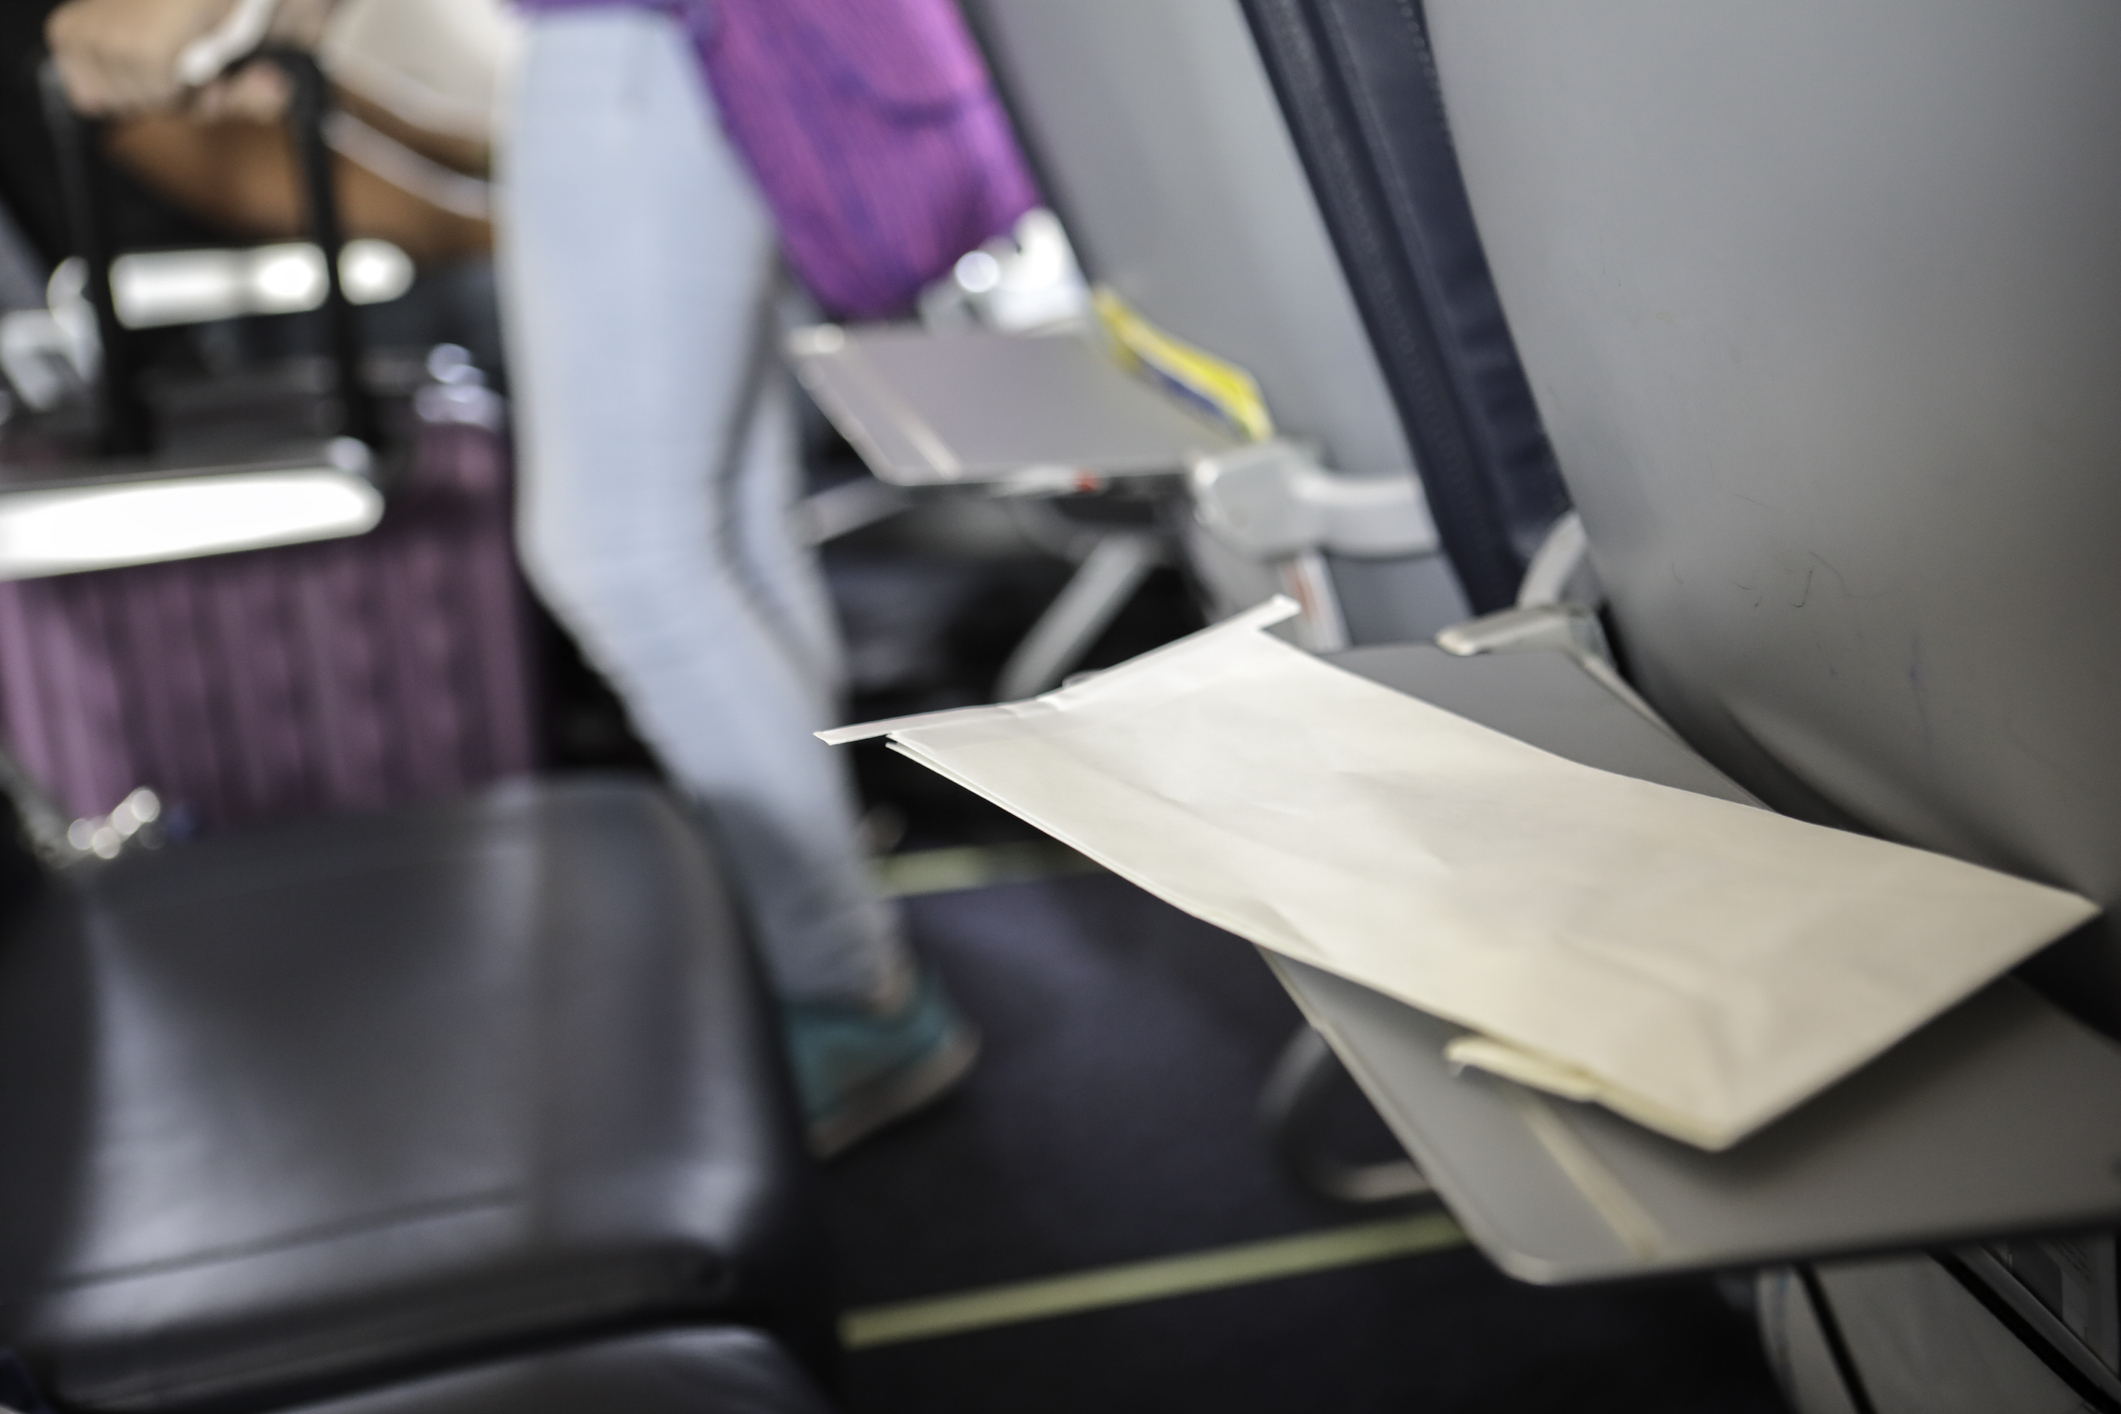 Ein Umschlag liegt auf einem heruntergeklappten Tisch an einem Flugzeugsitz, im Hintergrund sind ein weiterer heruntergeklappter Tisch und eine Person auf dem Gang mit Koffer zu sehen.